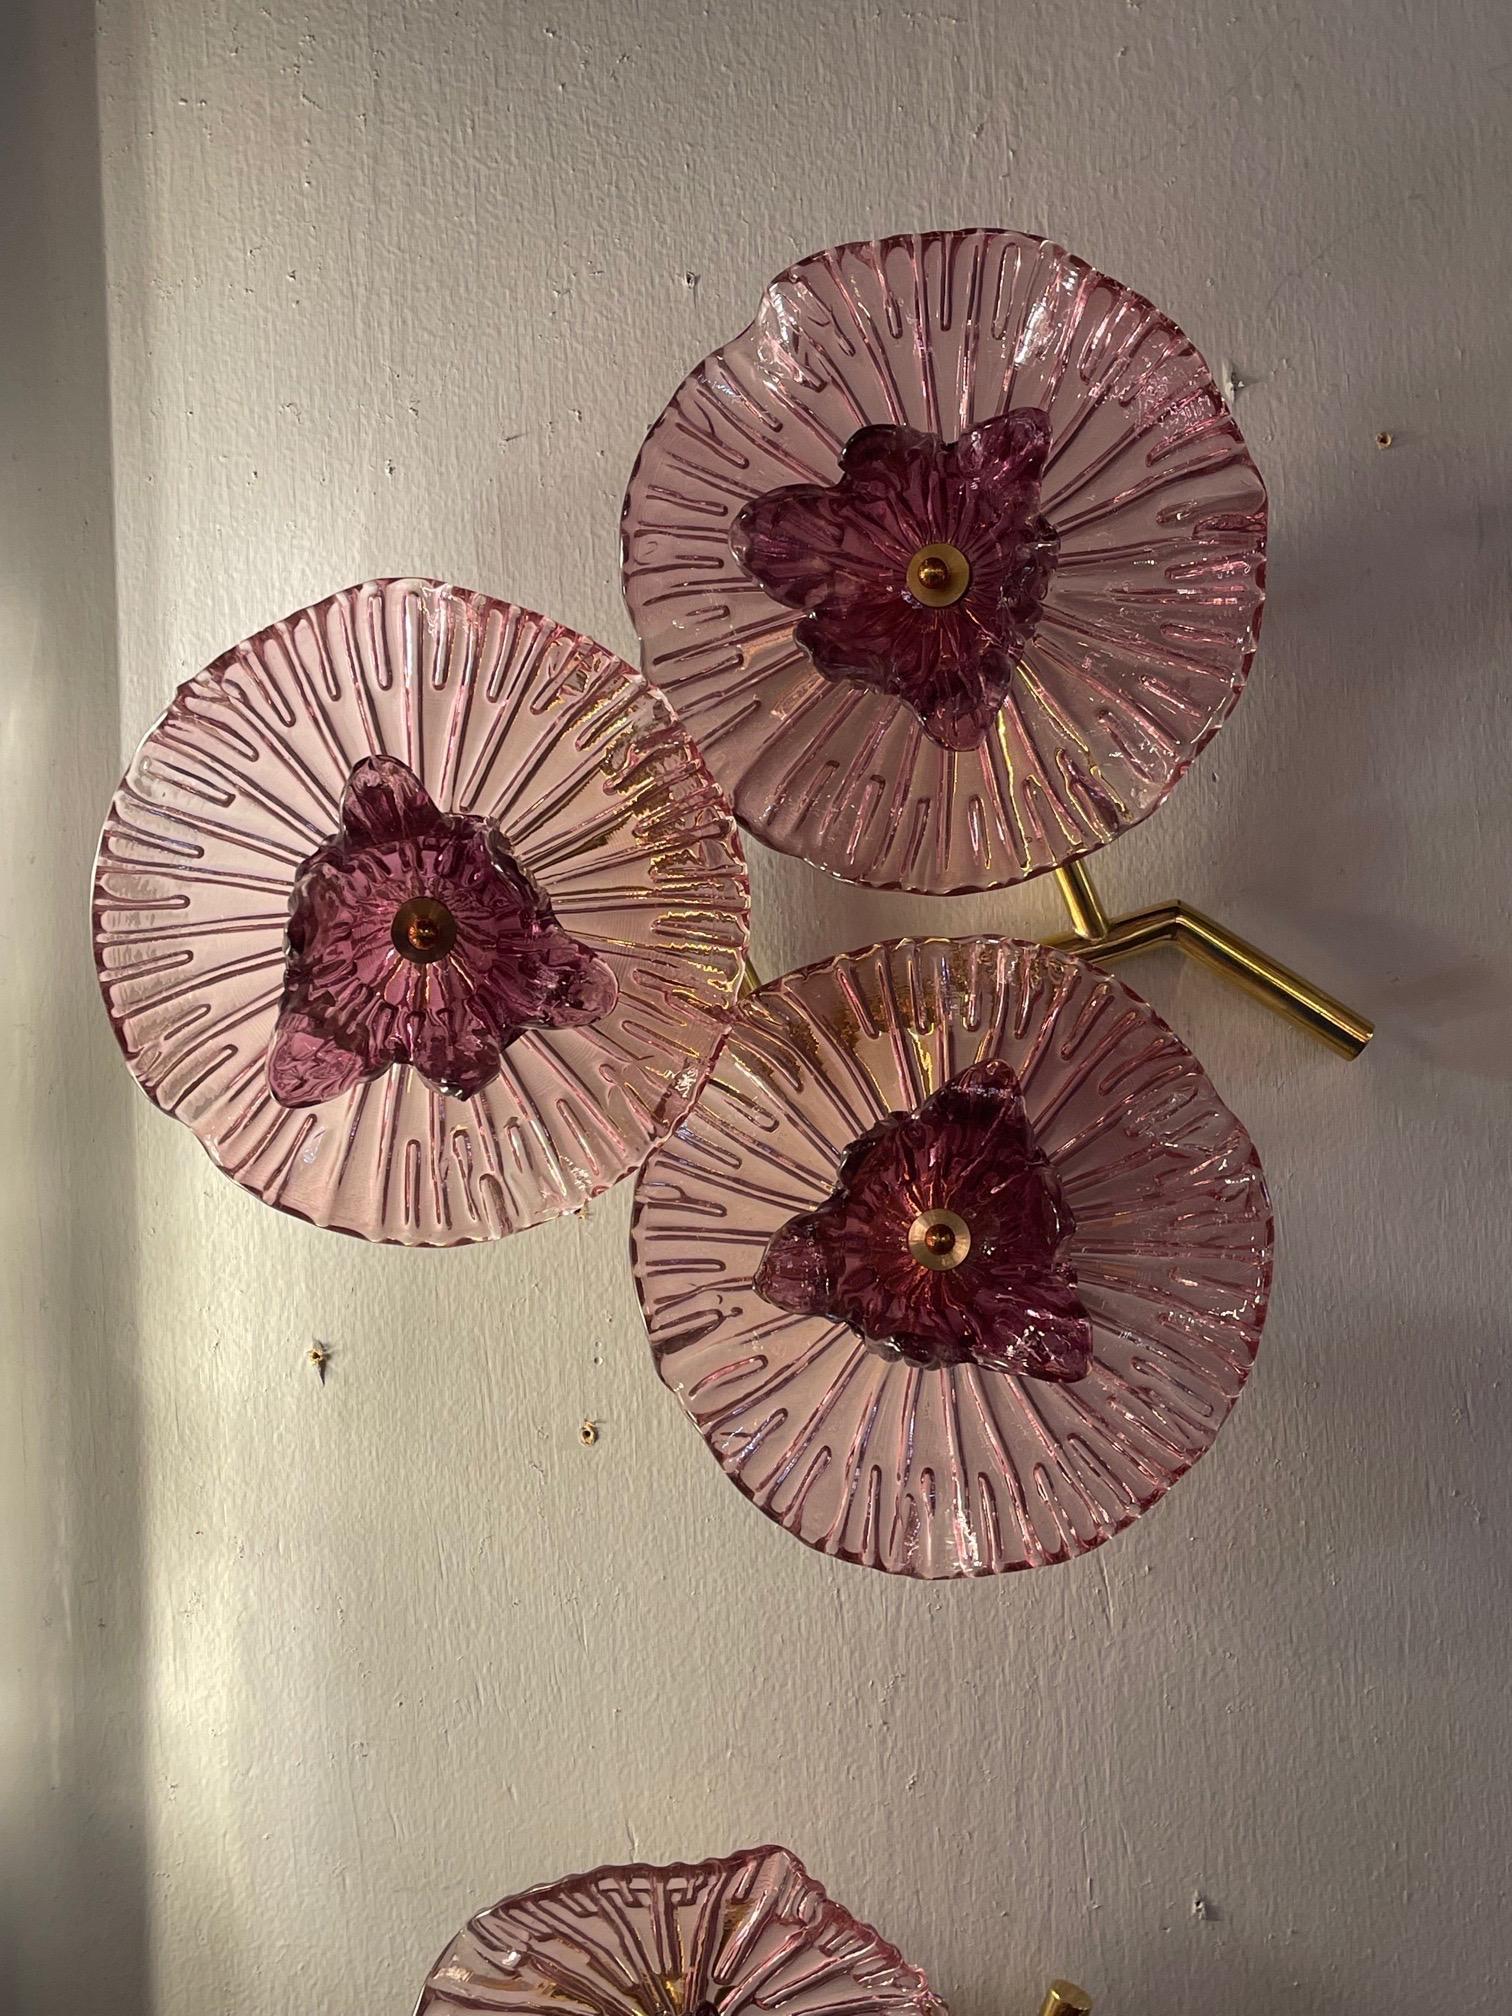 Paire d'appliques décoratives en verre Murano et laiton de couleur lavande. Le verre est d'une grande beauté et ressemble à des fleurs. Super joli !